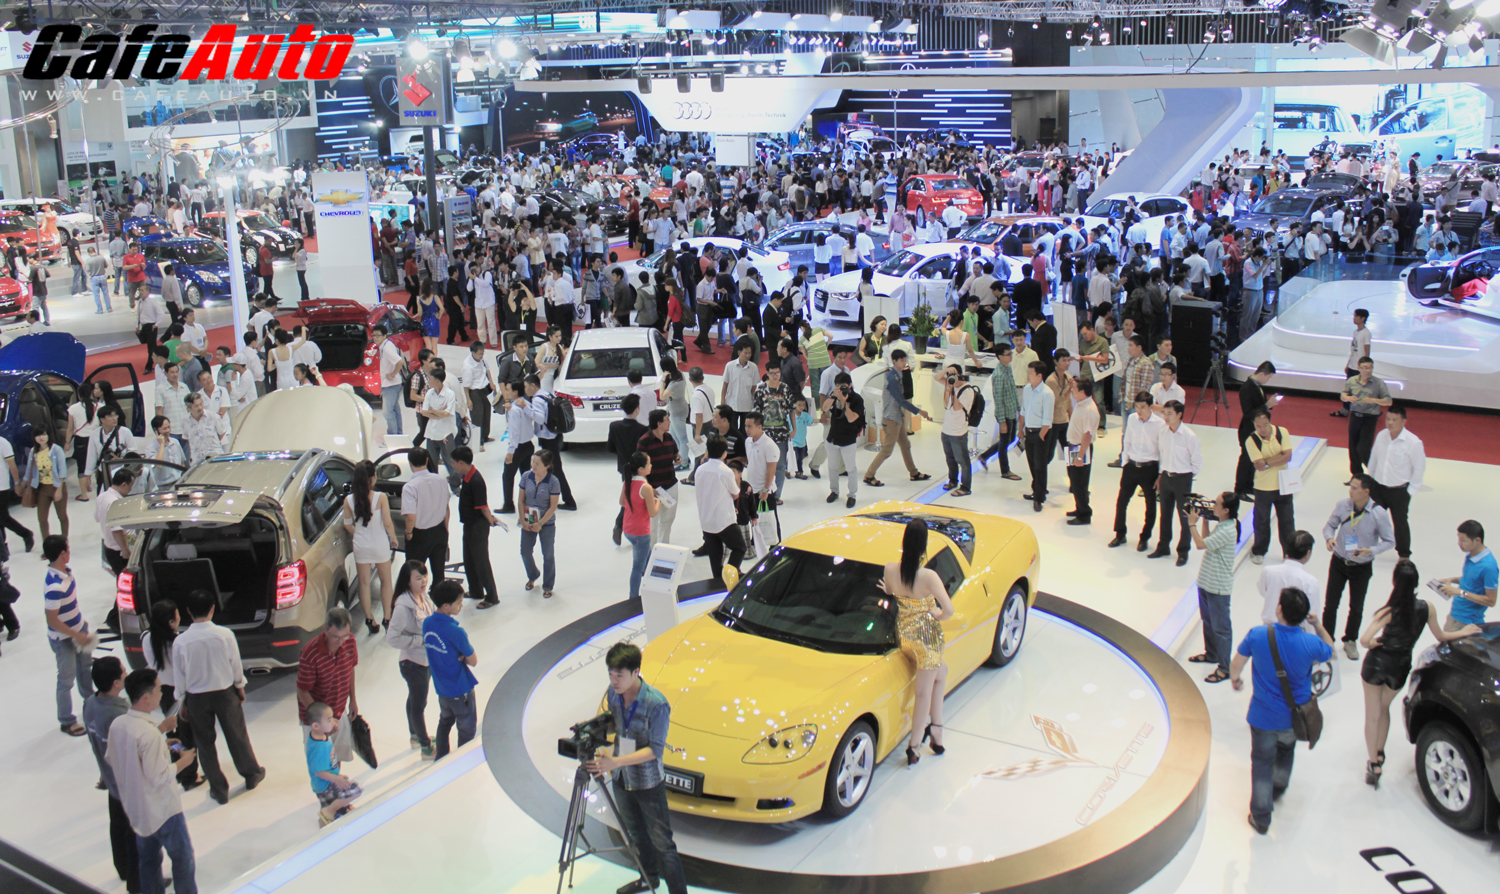 16 thương hiệu ô tô đăng ký tham dự Vietnam Motor Show 2014